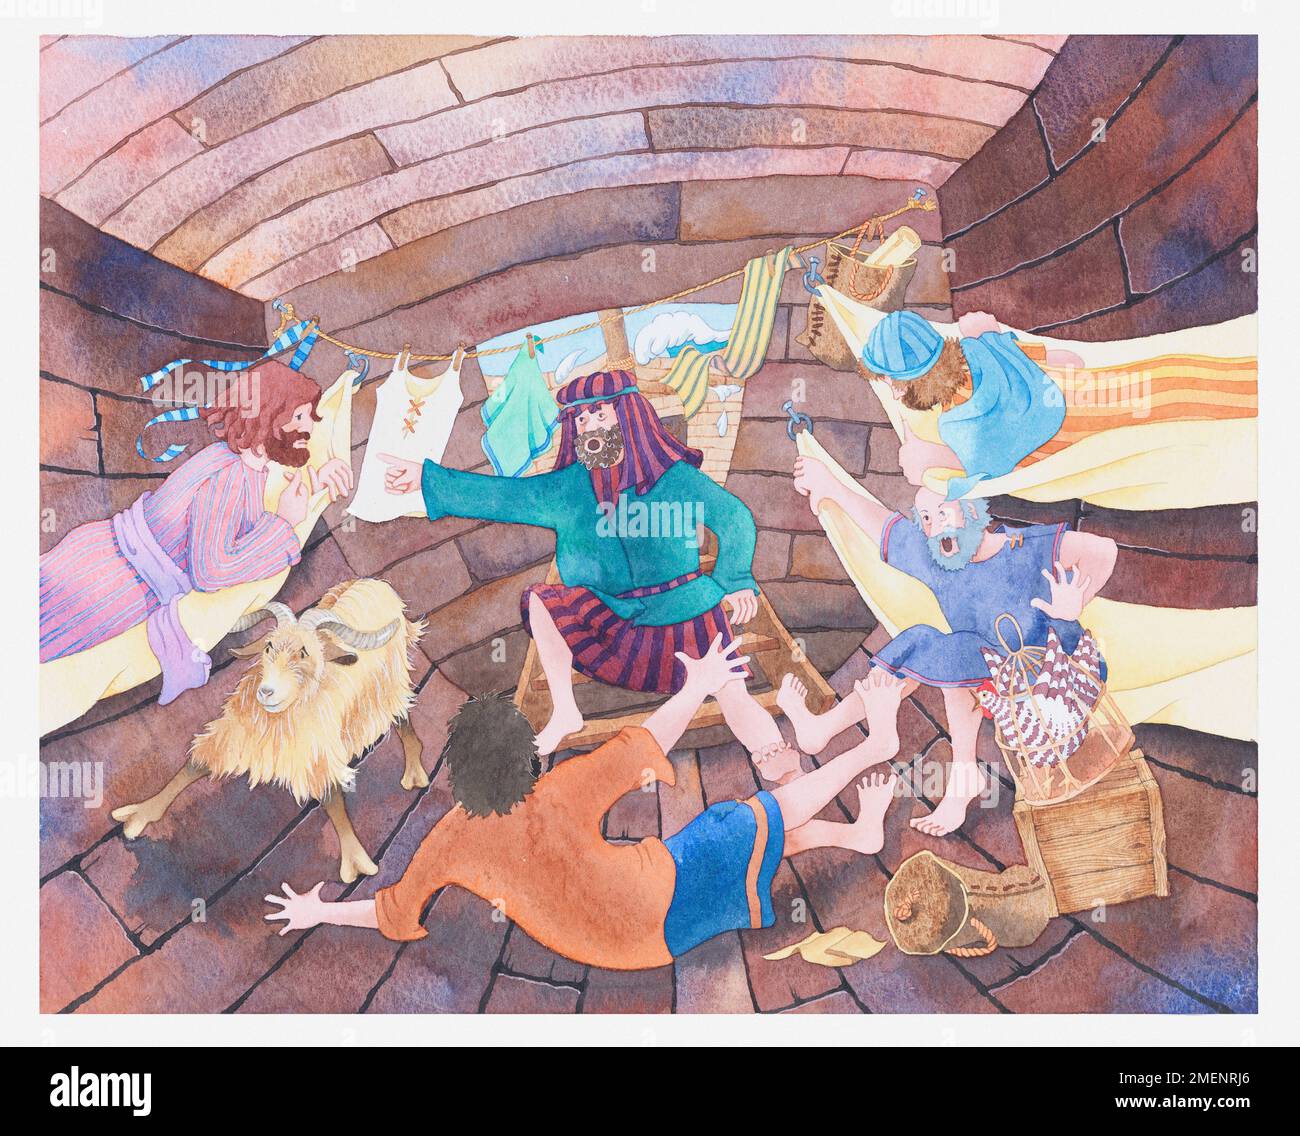 Illustration aus der biblischen Geschichte von Jonah und dem Wal, in der die Matrosen und Jonah während eines Sturms in ihrem Schiff herumgeschleudert wurden Stockfoto